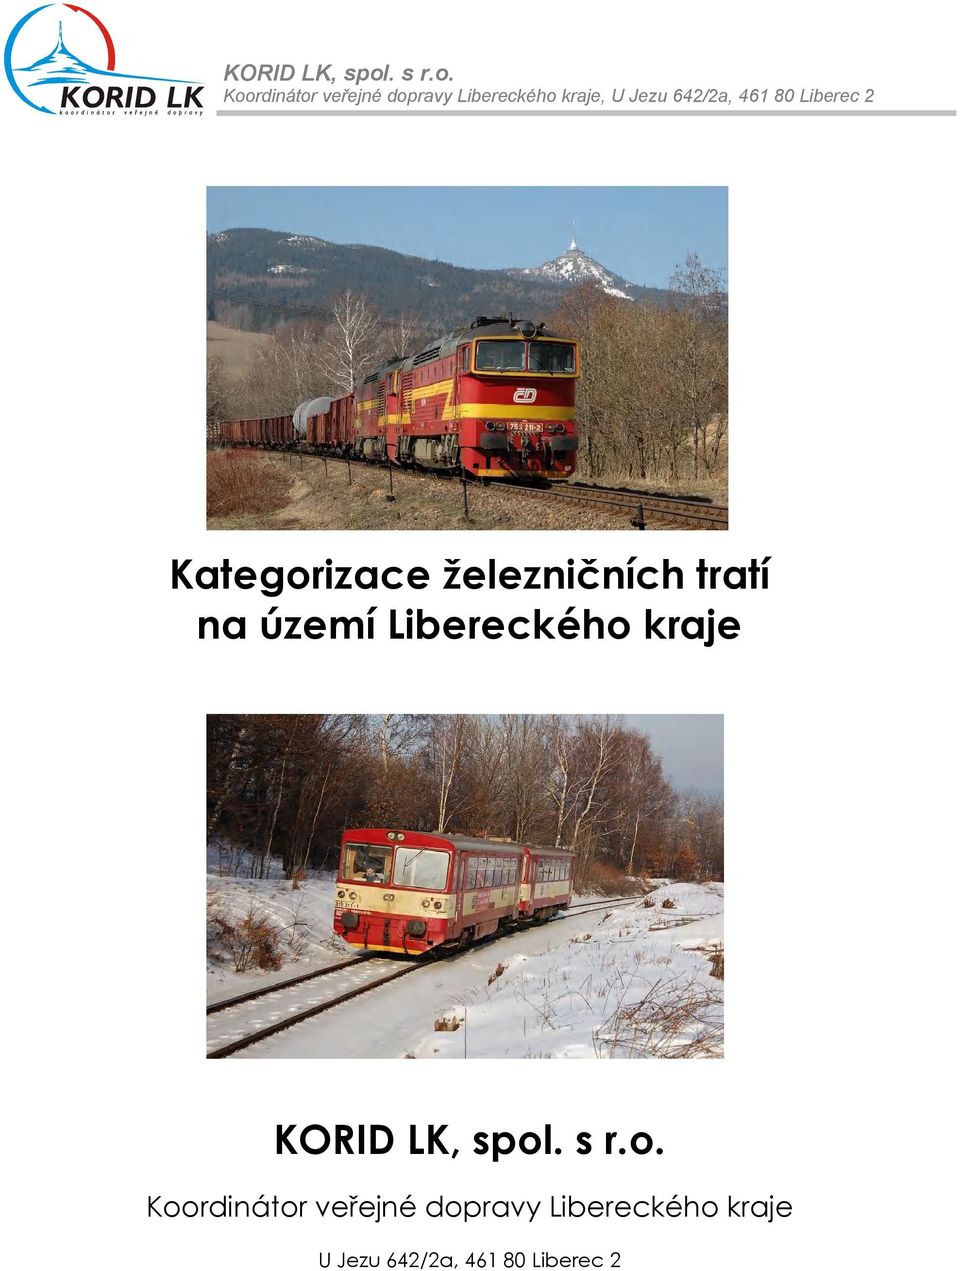 Koordinátor veřejné dopravy Libereckého kraje, U Jezu 642/2a, 461